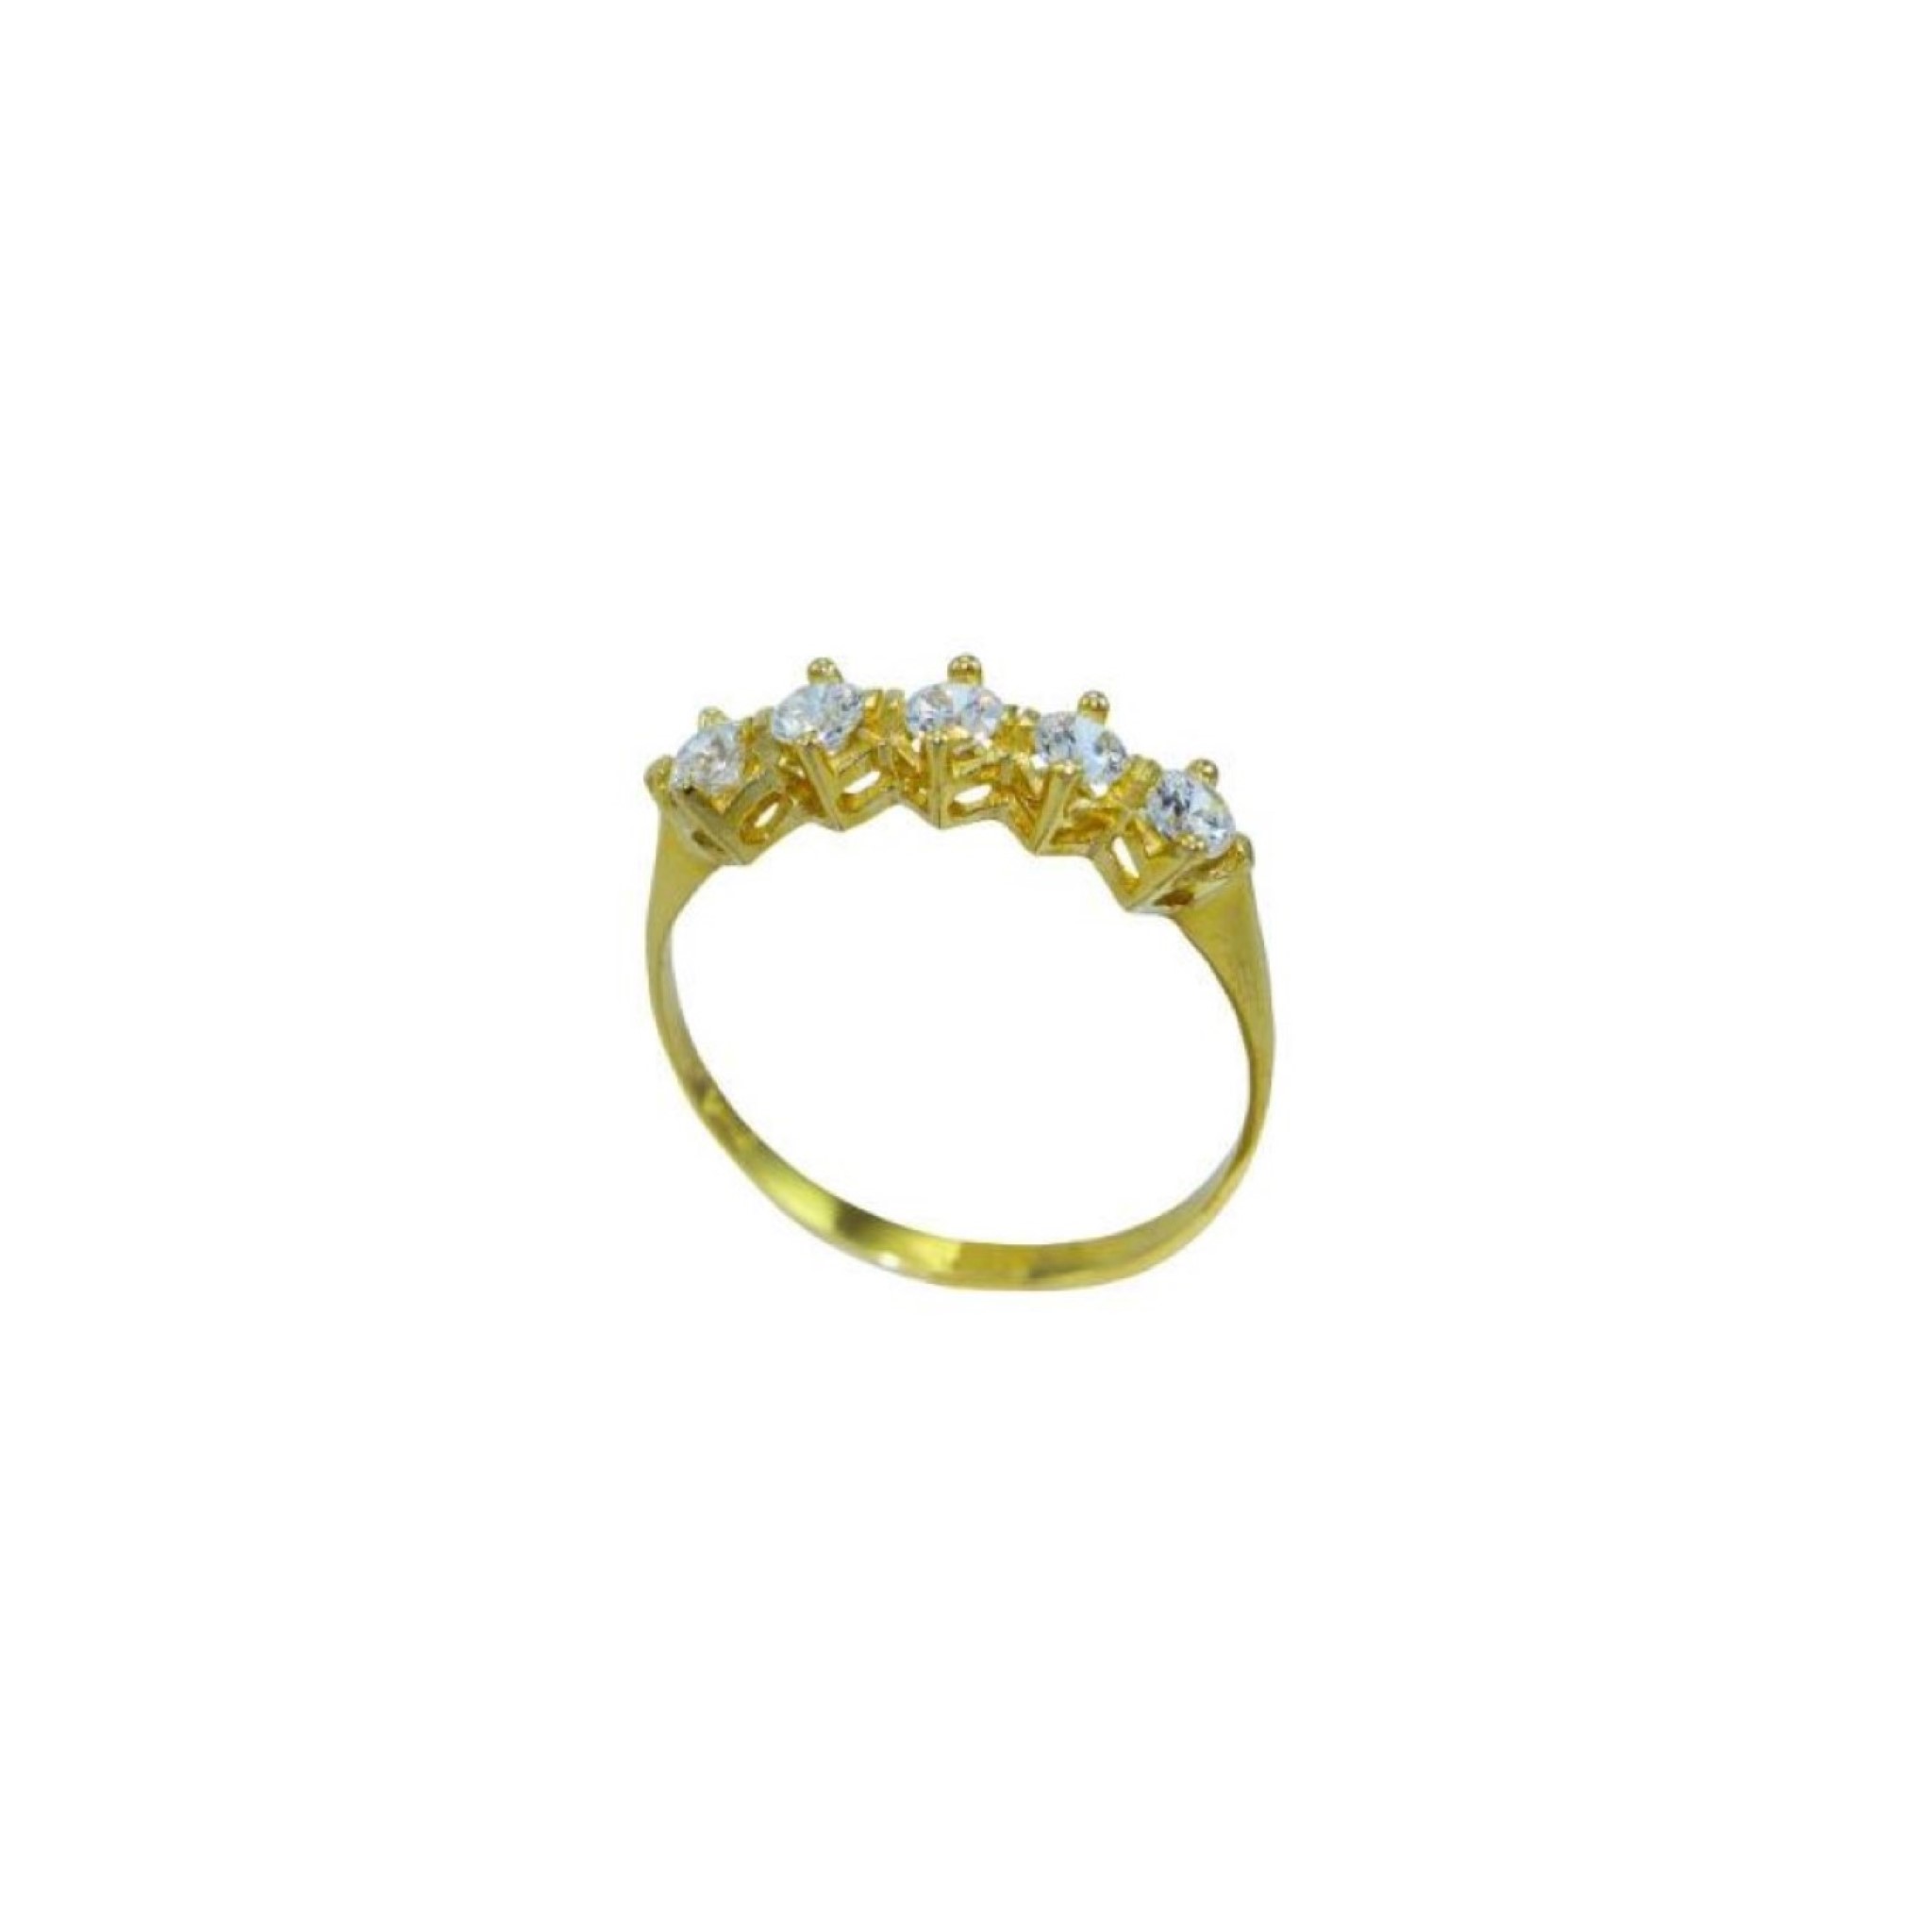 Μοντέρνο γυναικείο δακτυλίδι σειρέ από κίτρινο χρυσό Κ14 με λευκά ζιργκόν.